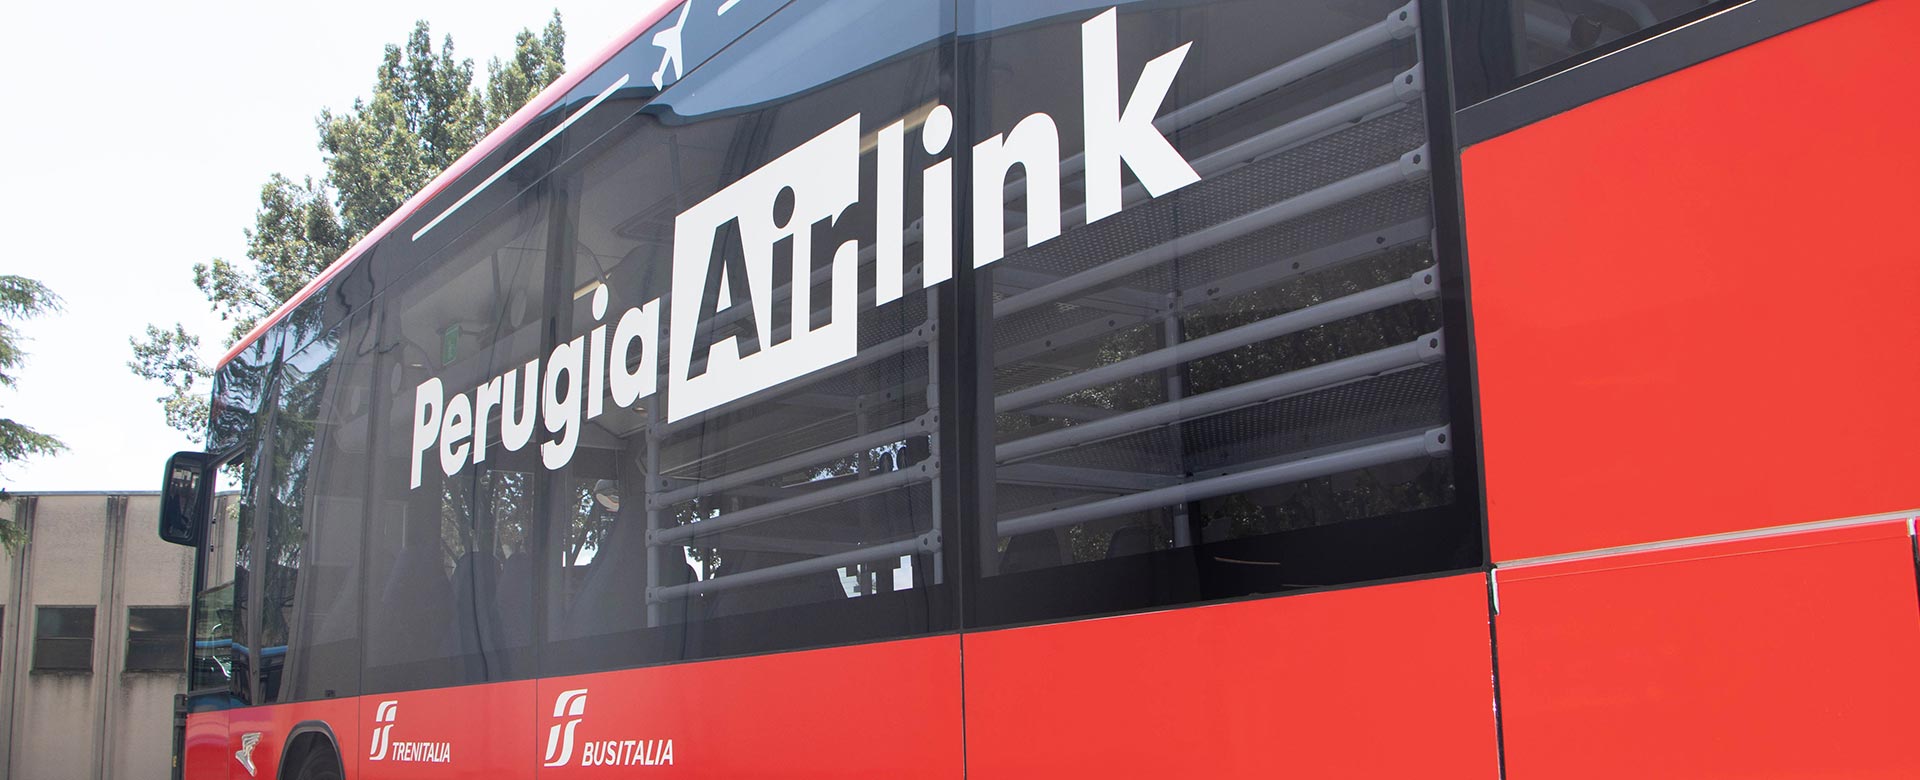 Bus Perugia Airlink